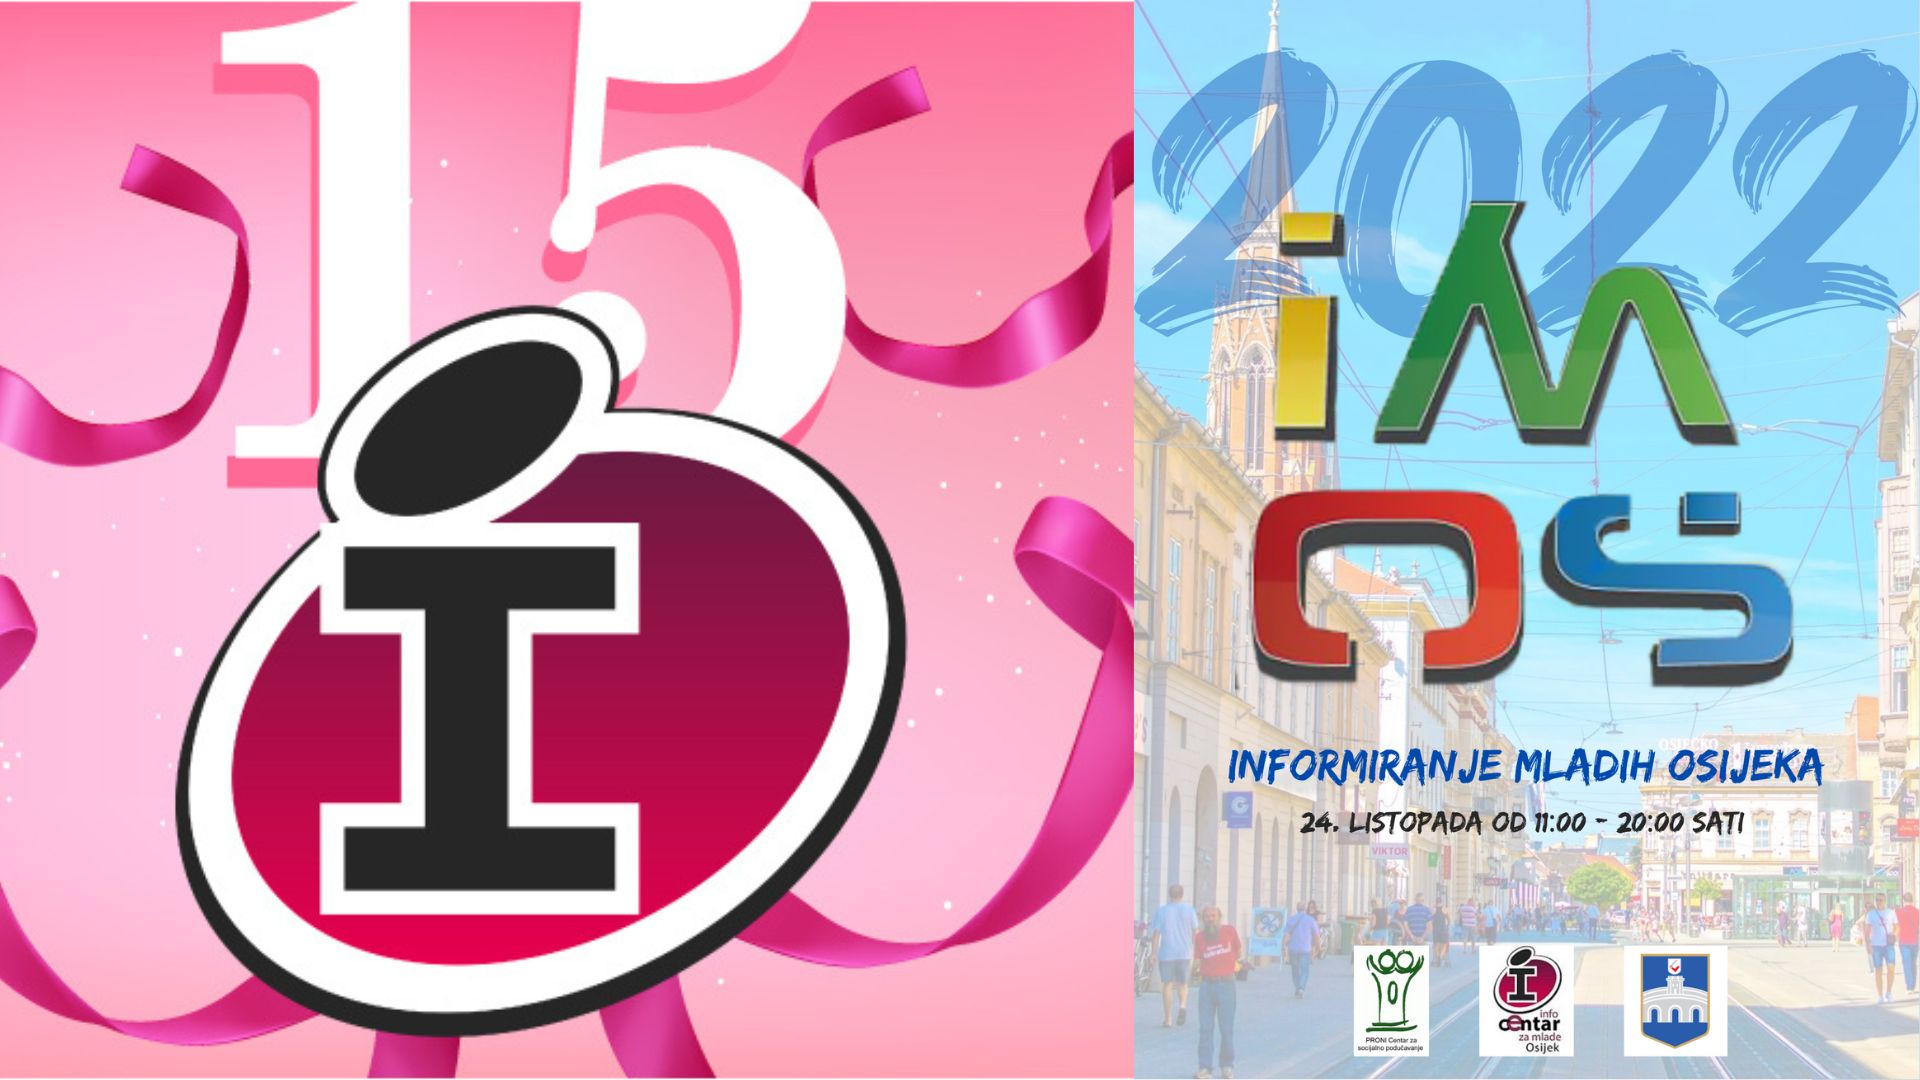 Dođite na iMOS 2022 - Informiranje mladih Osijeka i proslavimo naš 15. rođendan